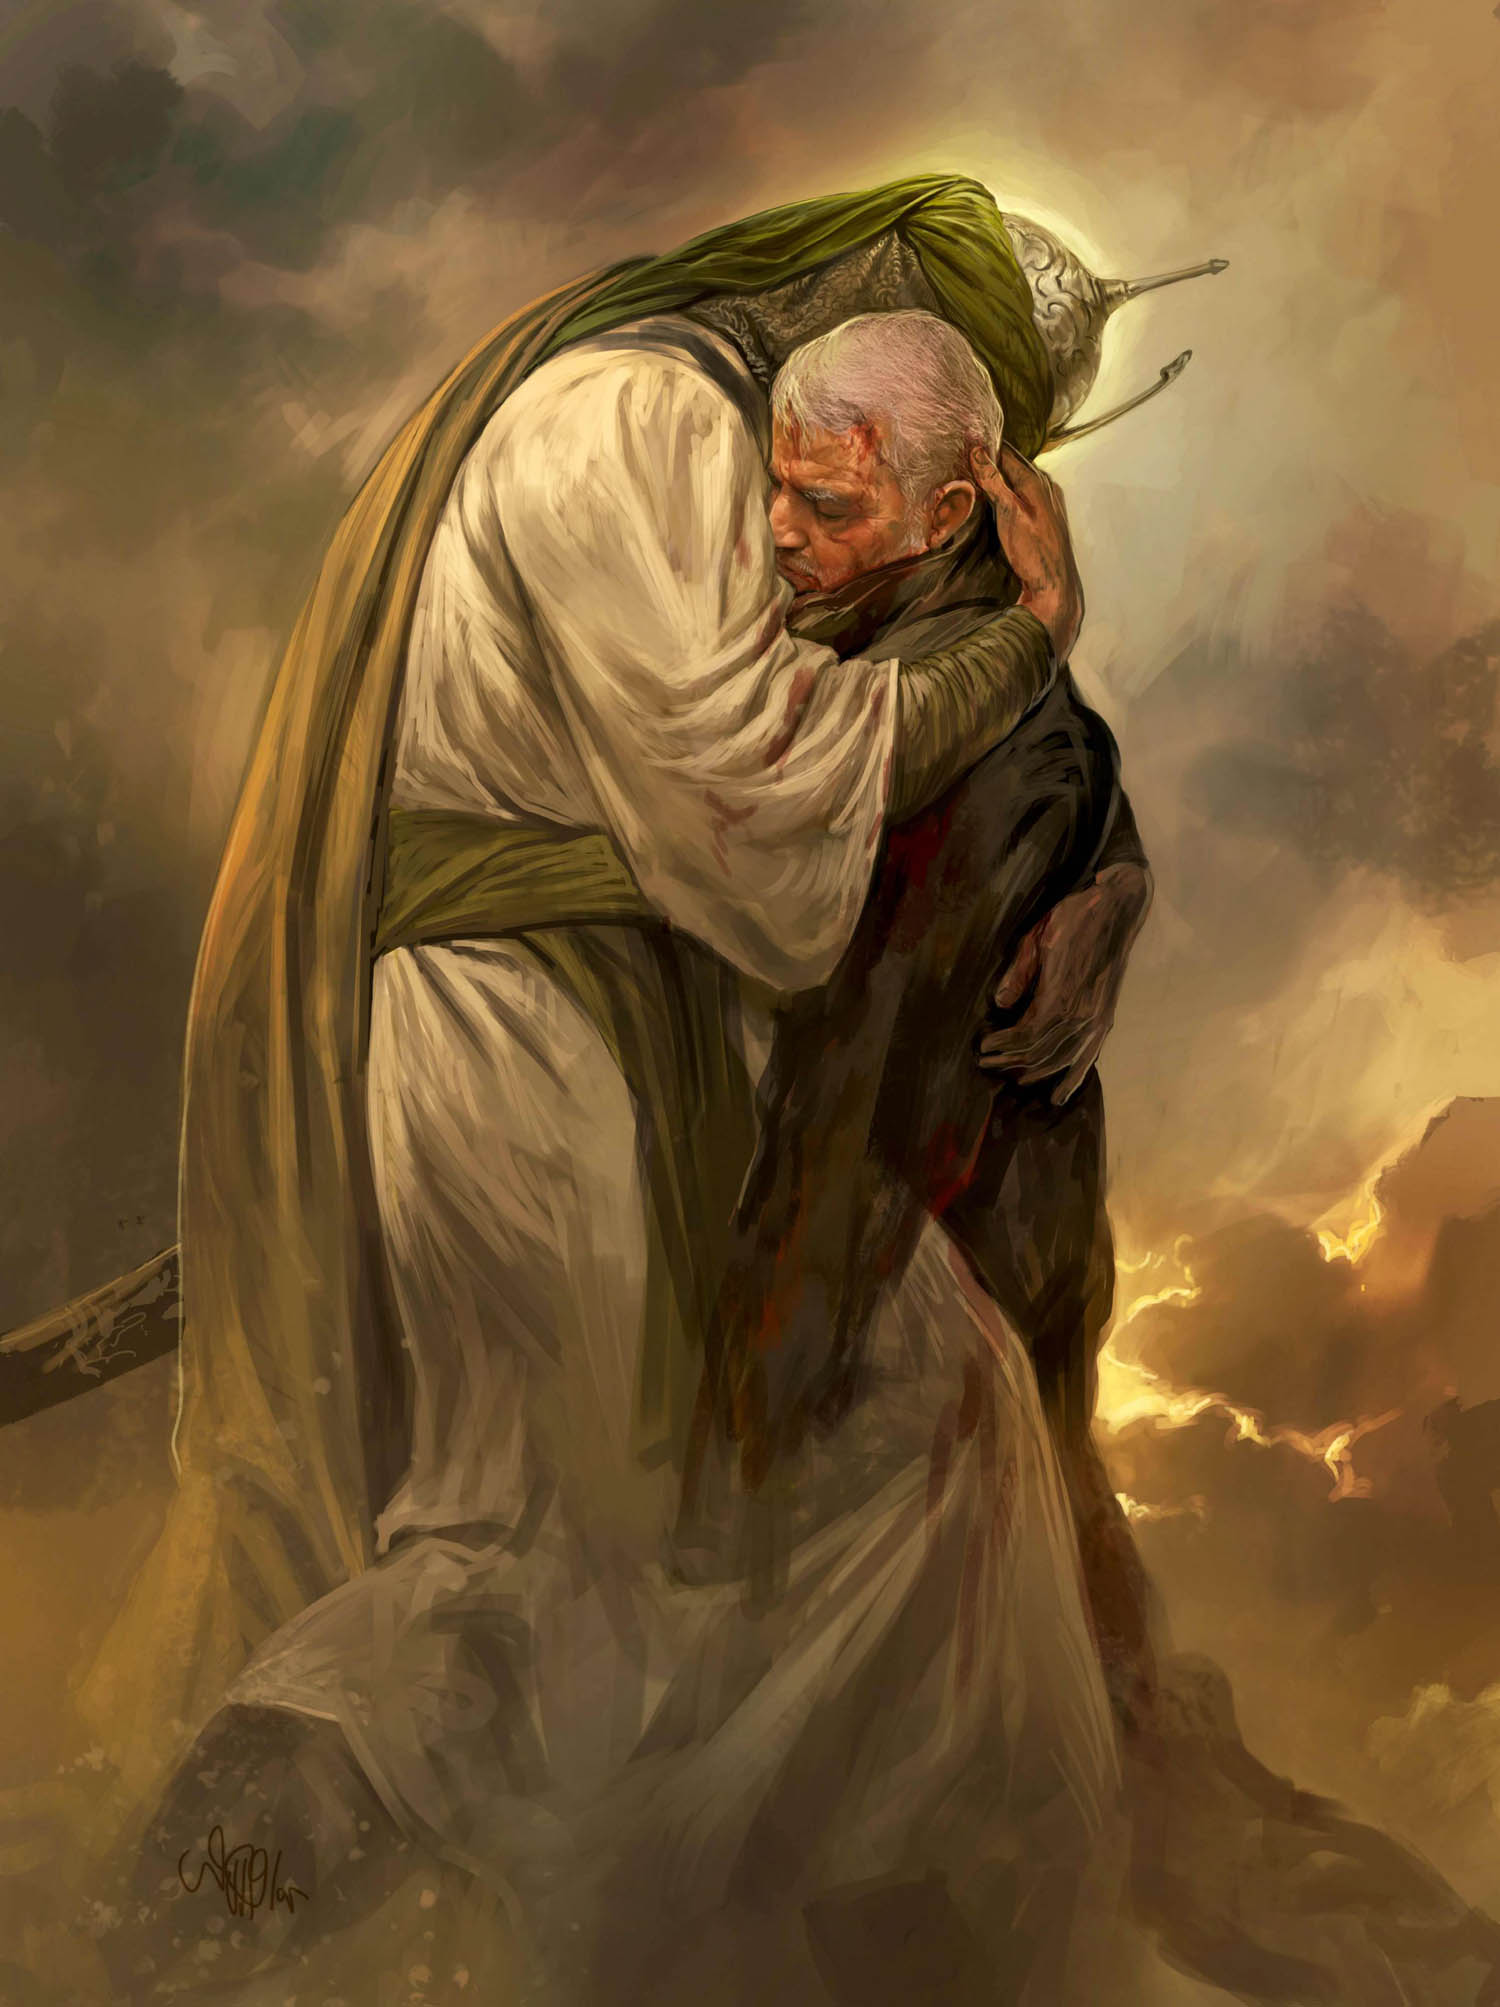 لوحة على موقع المرشد الأعلى تصور سليماني مع الحسين